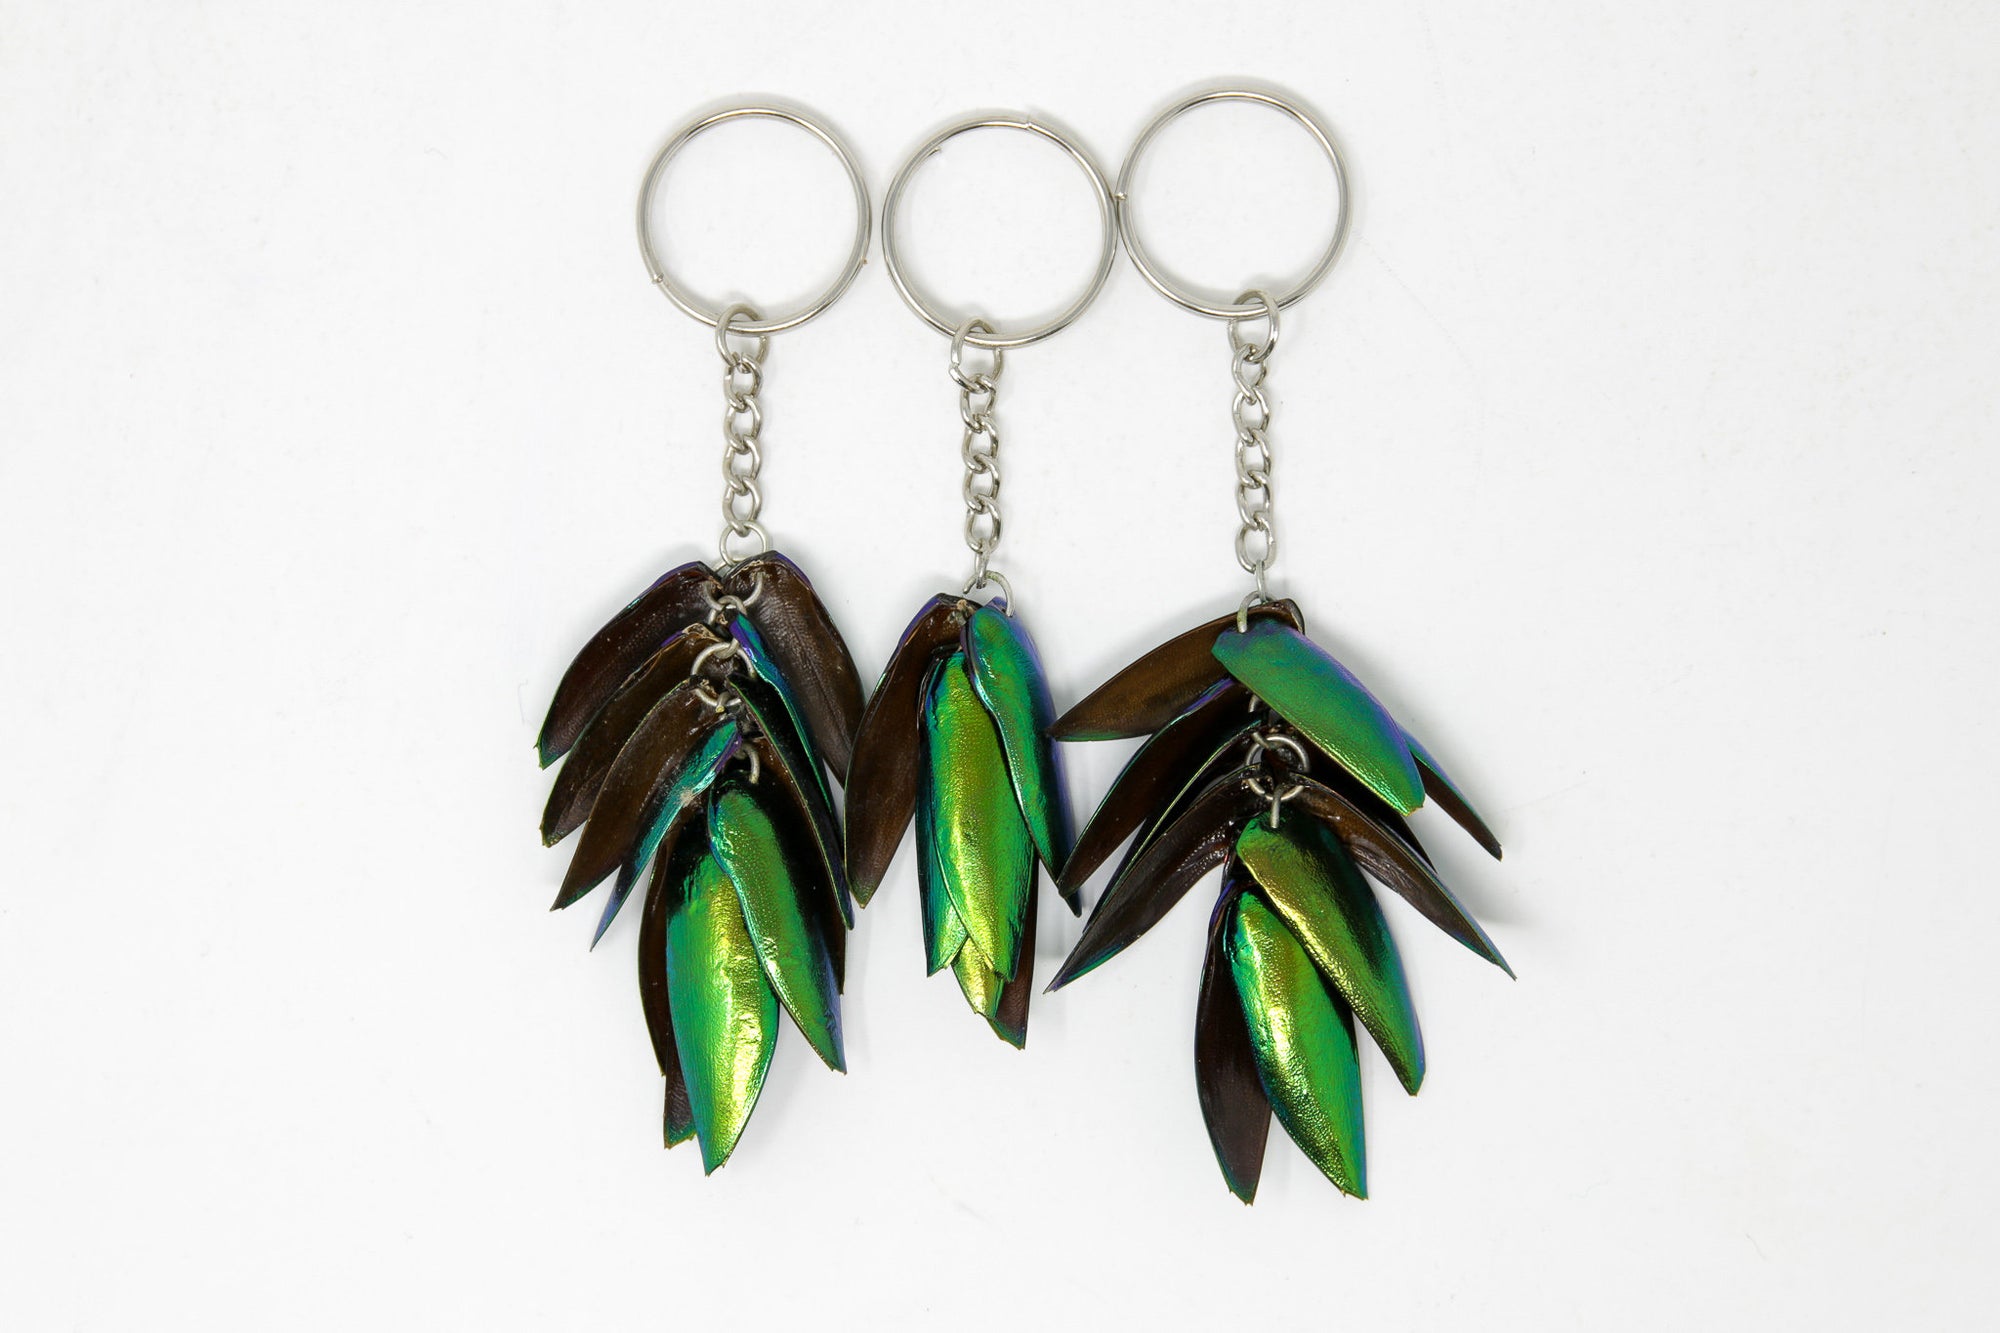 Pack of 3 Jewel Beetle Keyrings Keychains - Real Metallic Green Beetle Wings Elytra